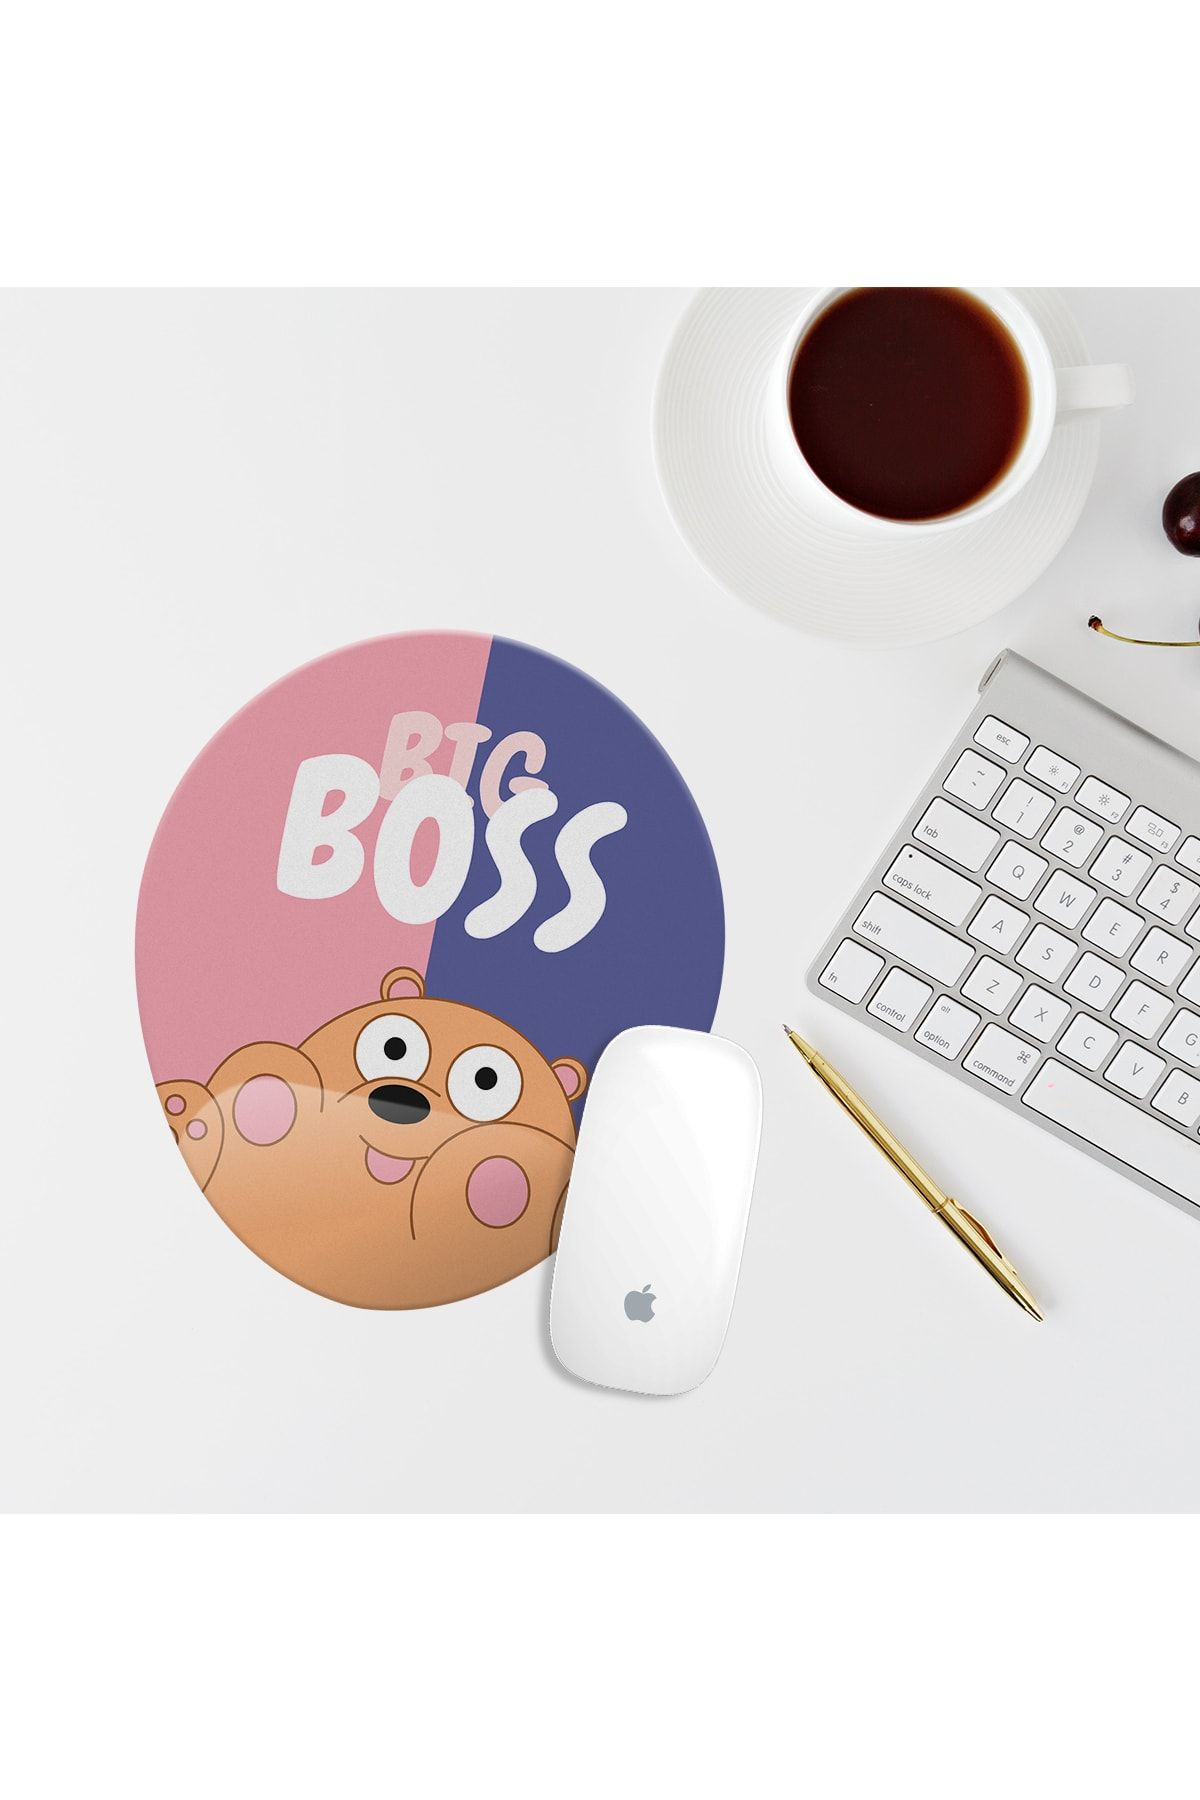 Özer Store Big Boss Ayıcıklı Bilek Destekli Oval Mouse Altlığı